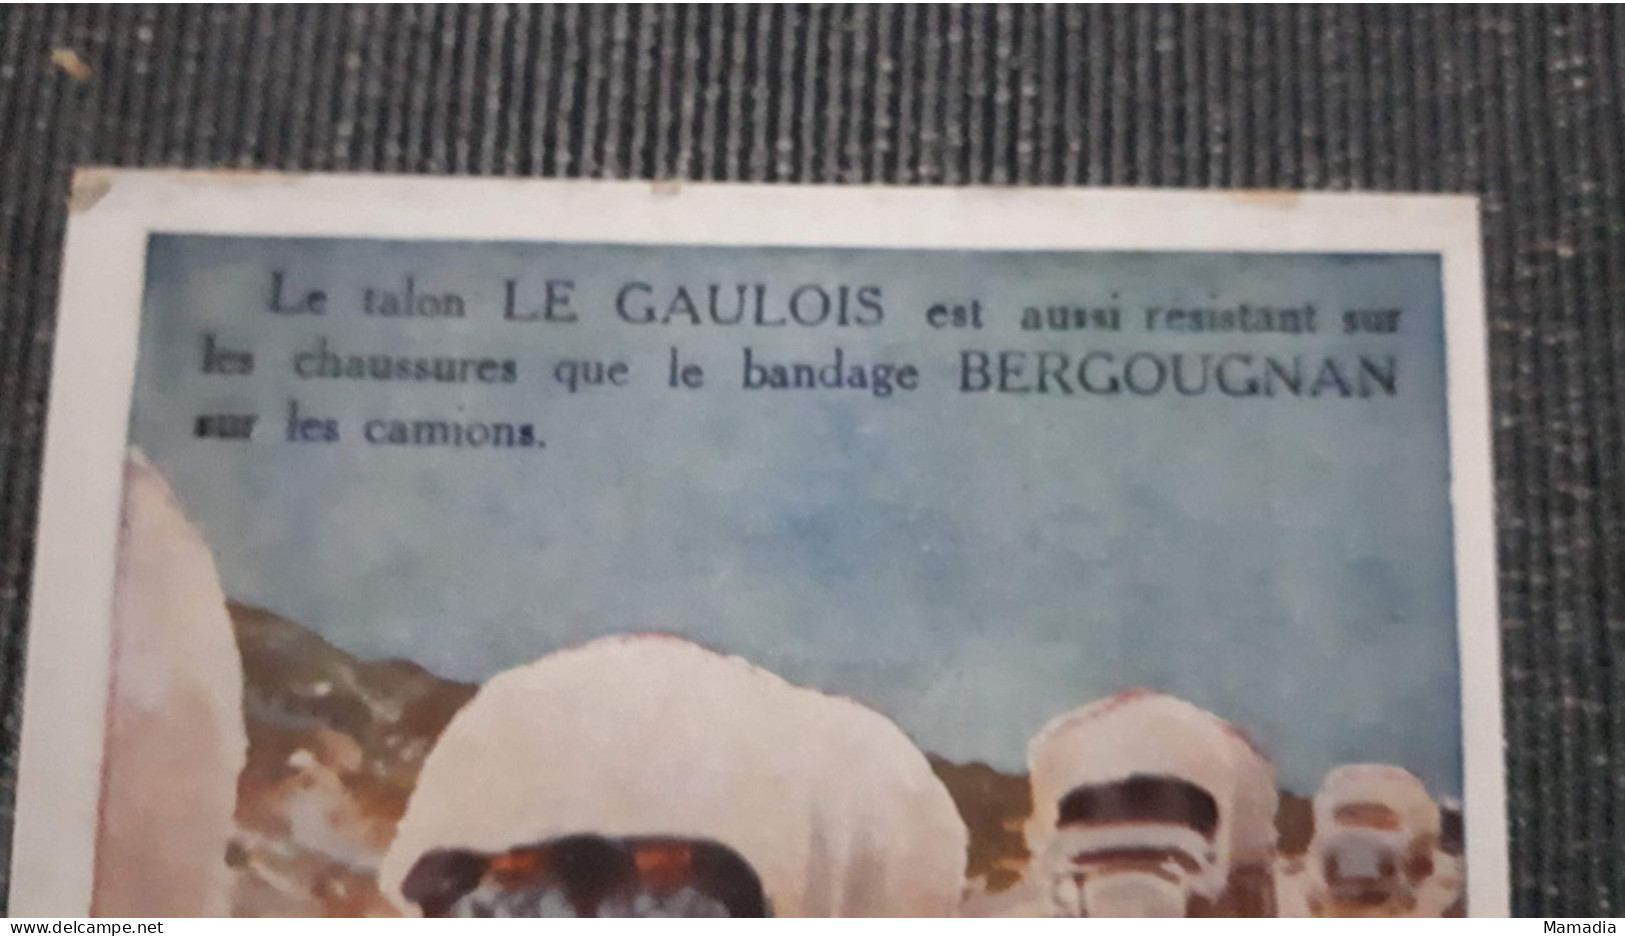 CARTE PUBLICITAIRE CAOUTCHOUC BANDAGES ETS BERGOUGNAN TALON LE GAULOIS  T. SALA - Reclame